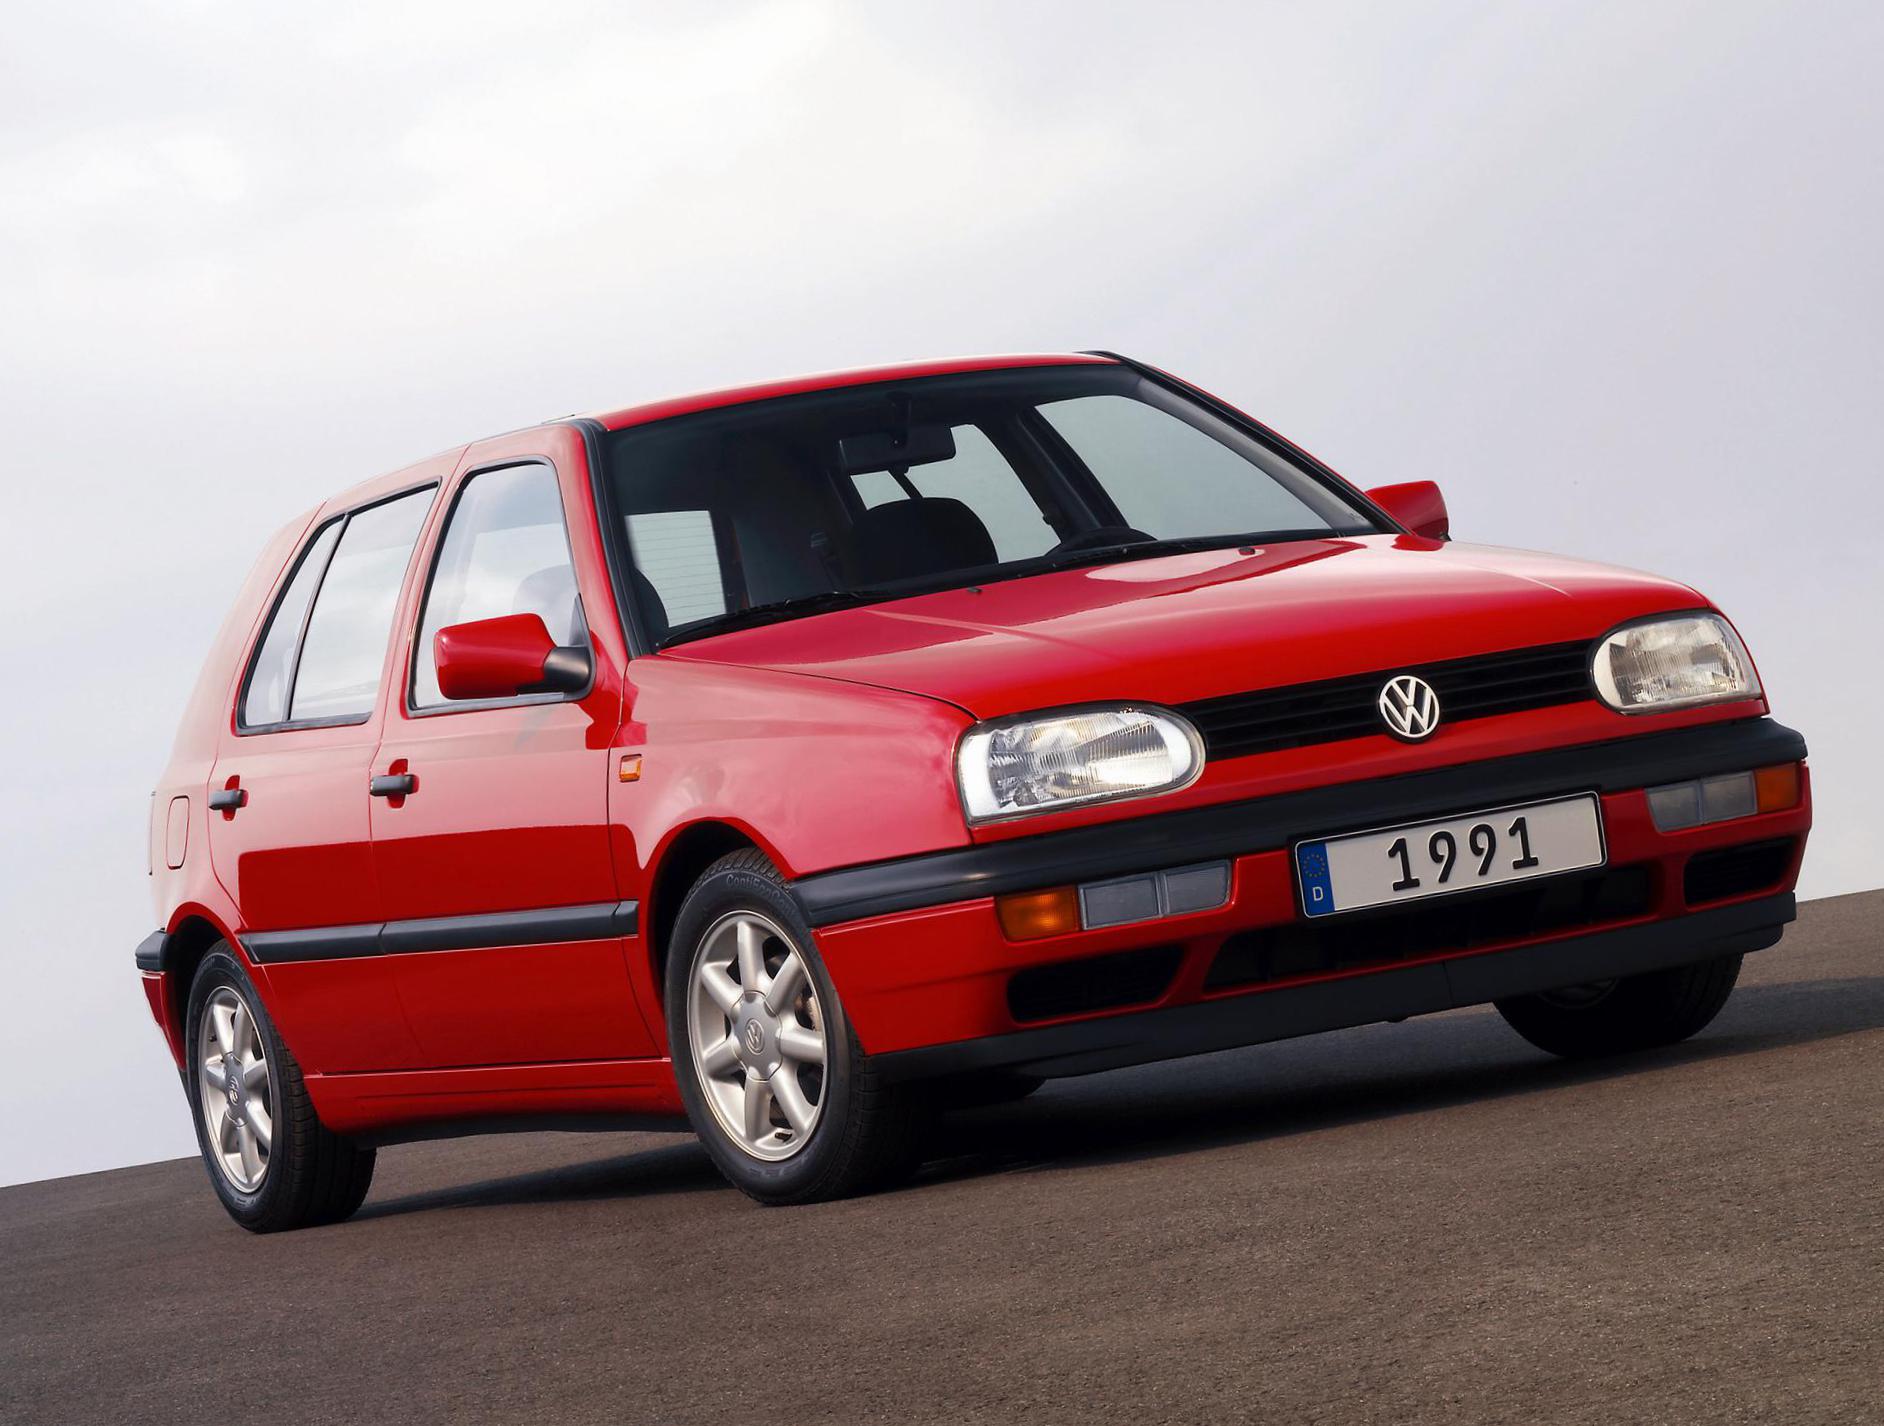 Golf R 3 doors Volkswagen review suv